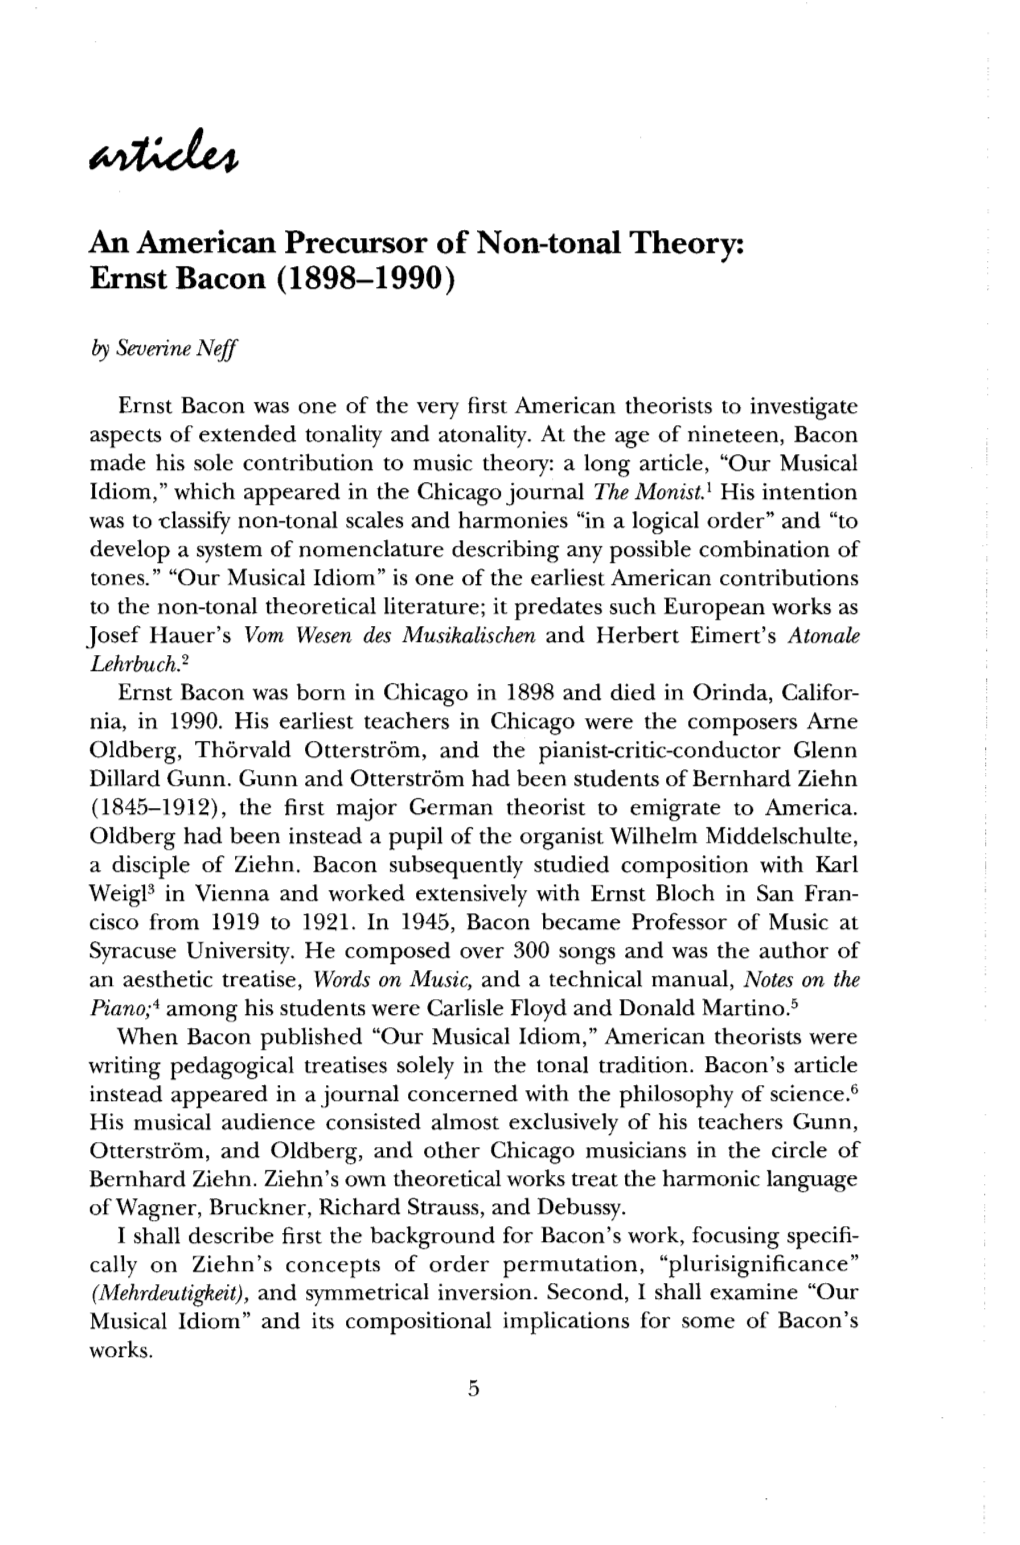 Ernst Bacon (1898-1990)